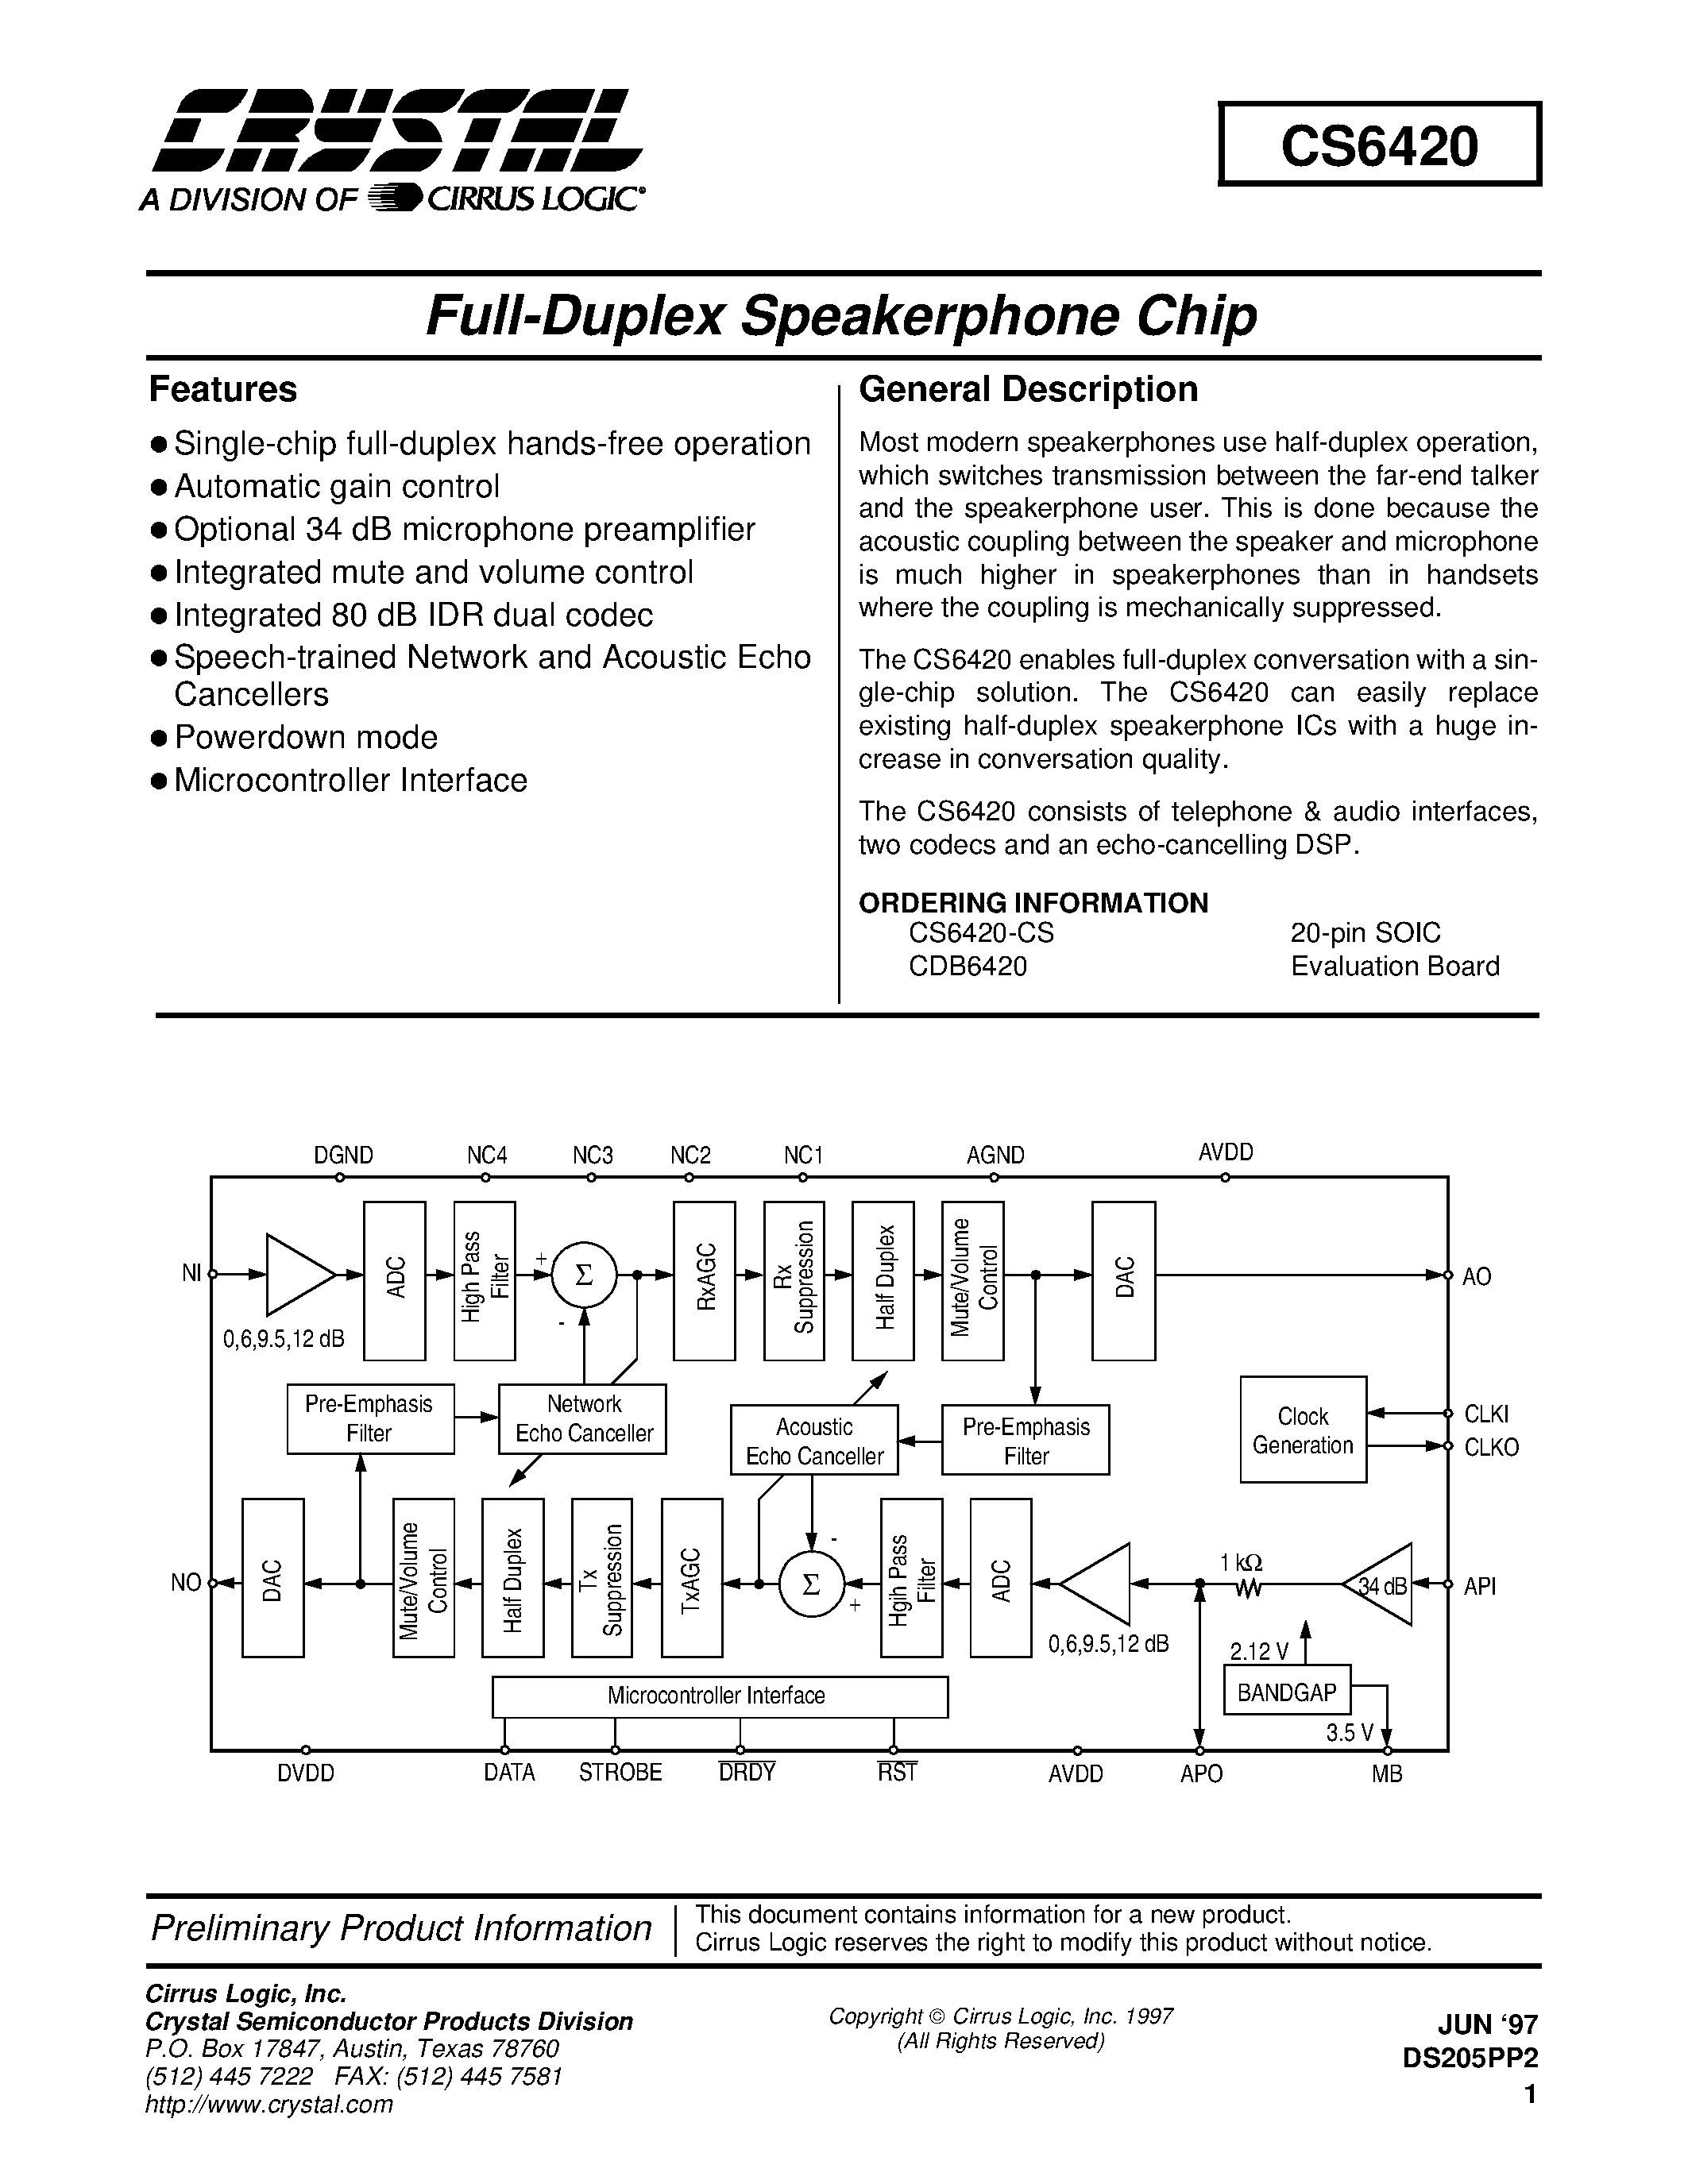 Даташит CD6420 - FULL DUPLEX SPEAKERPHONE CHIP страница 1